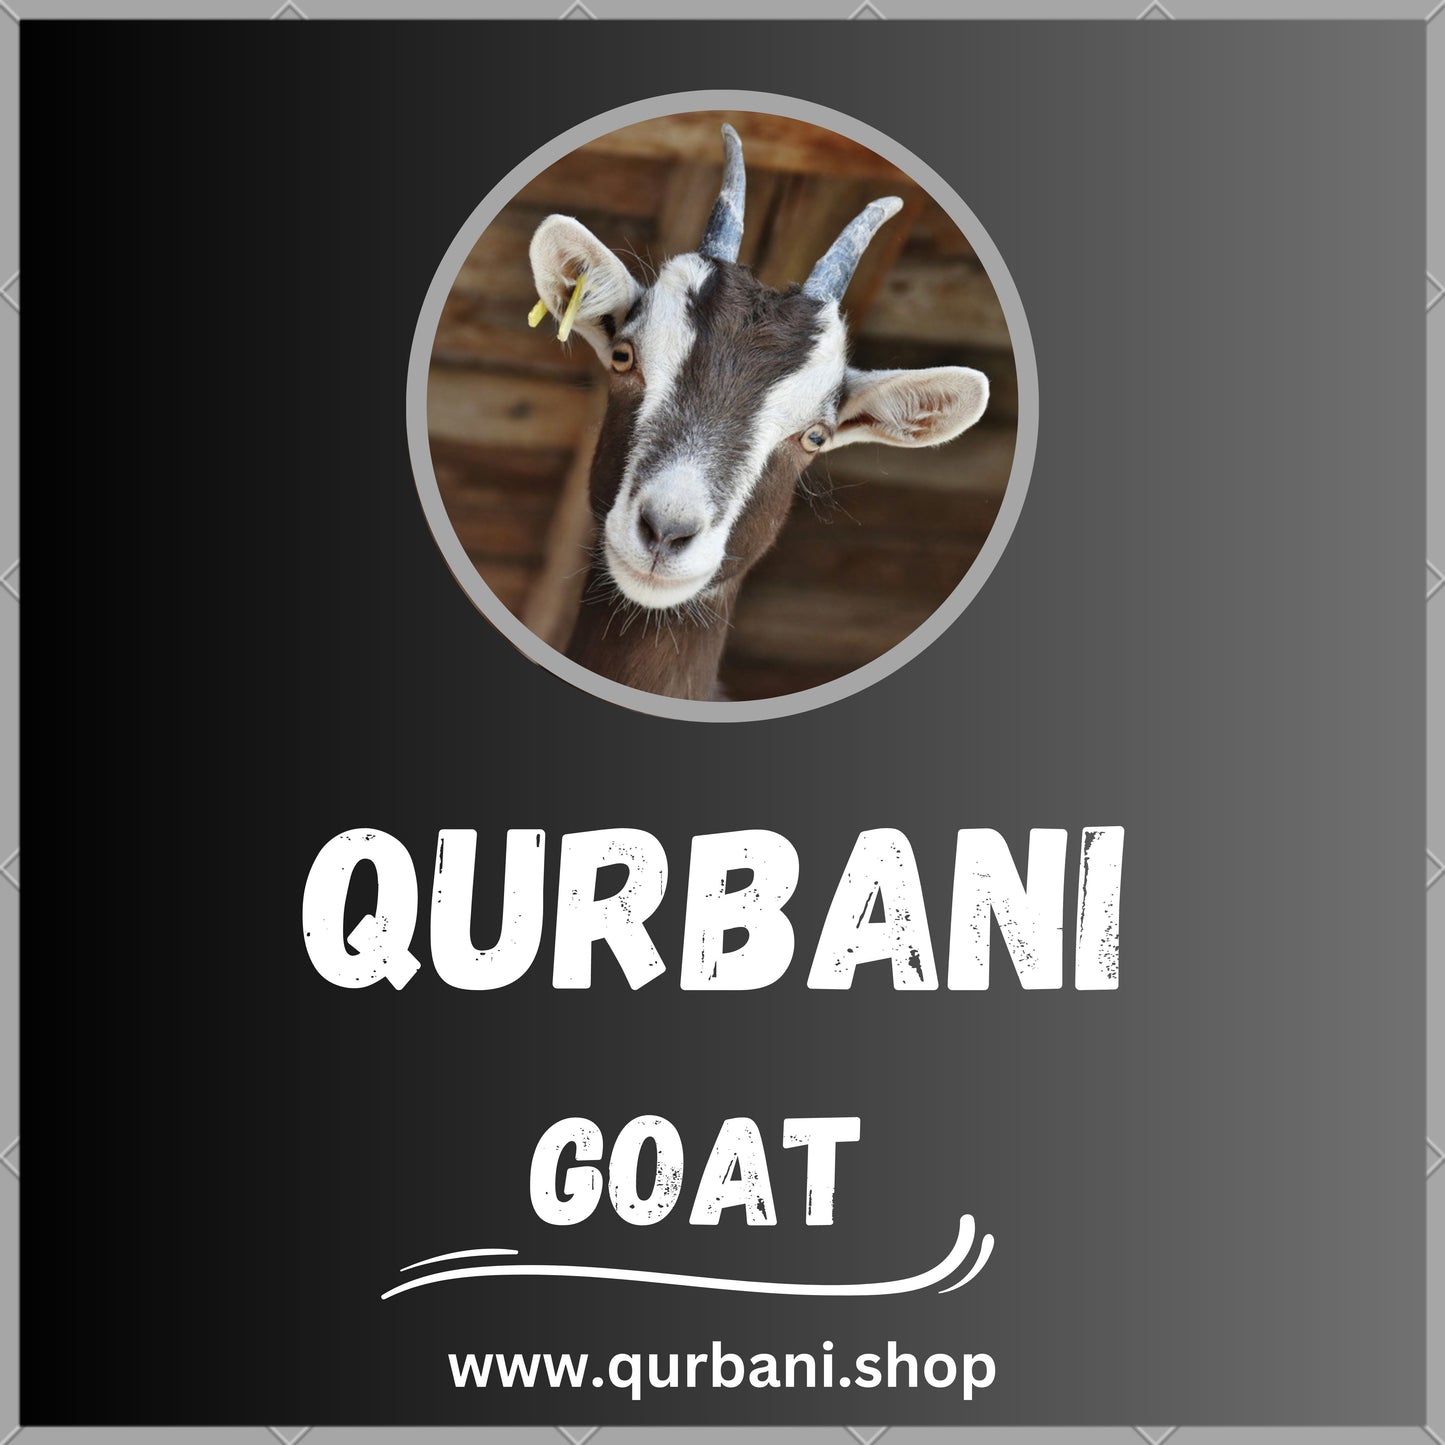 Perform Qurbani in Brooklyn - Book Your Eid Sacrifice